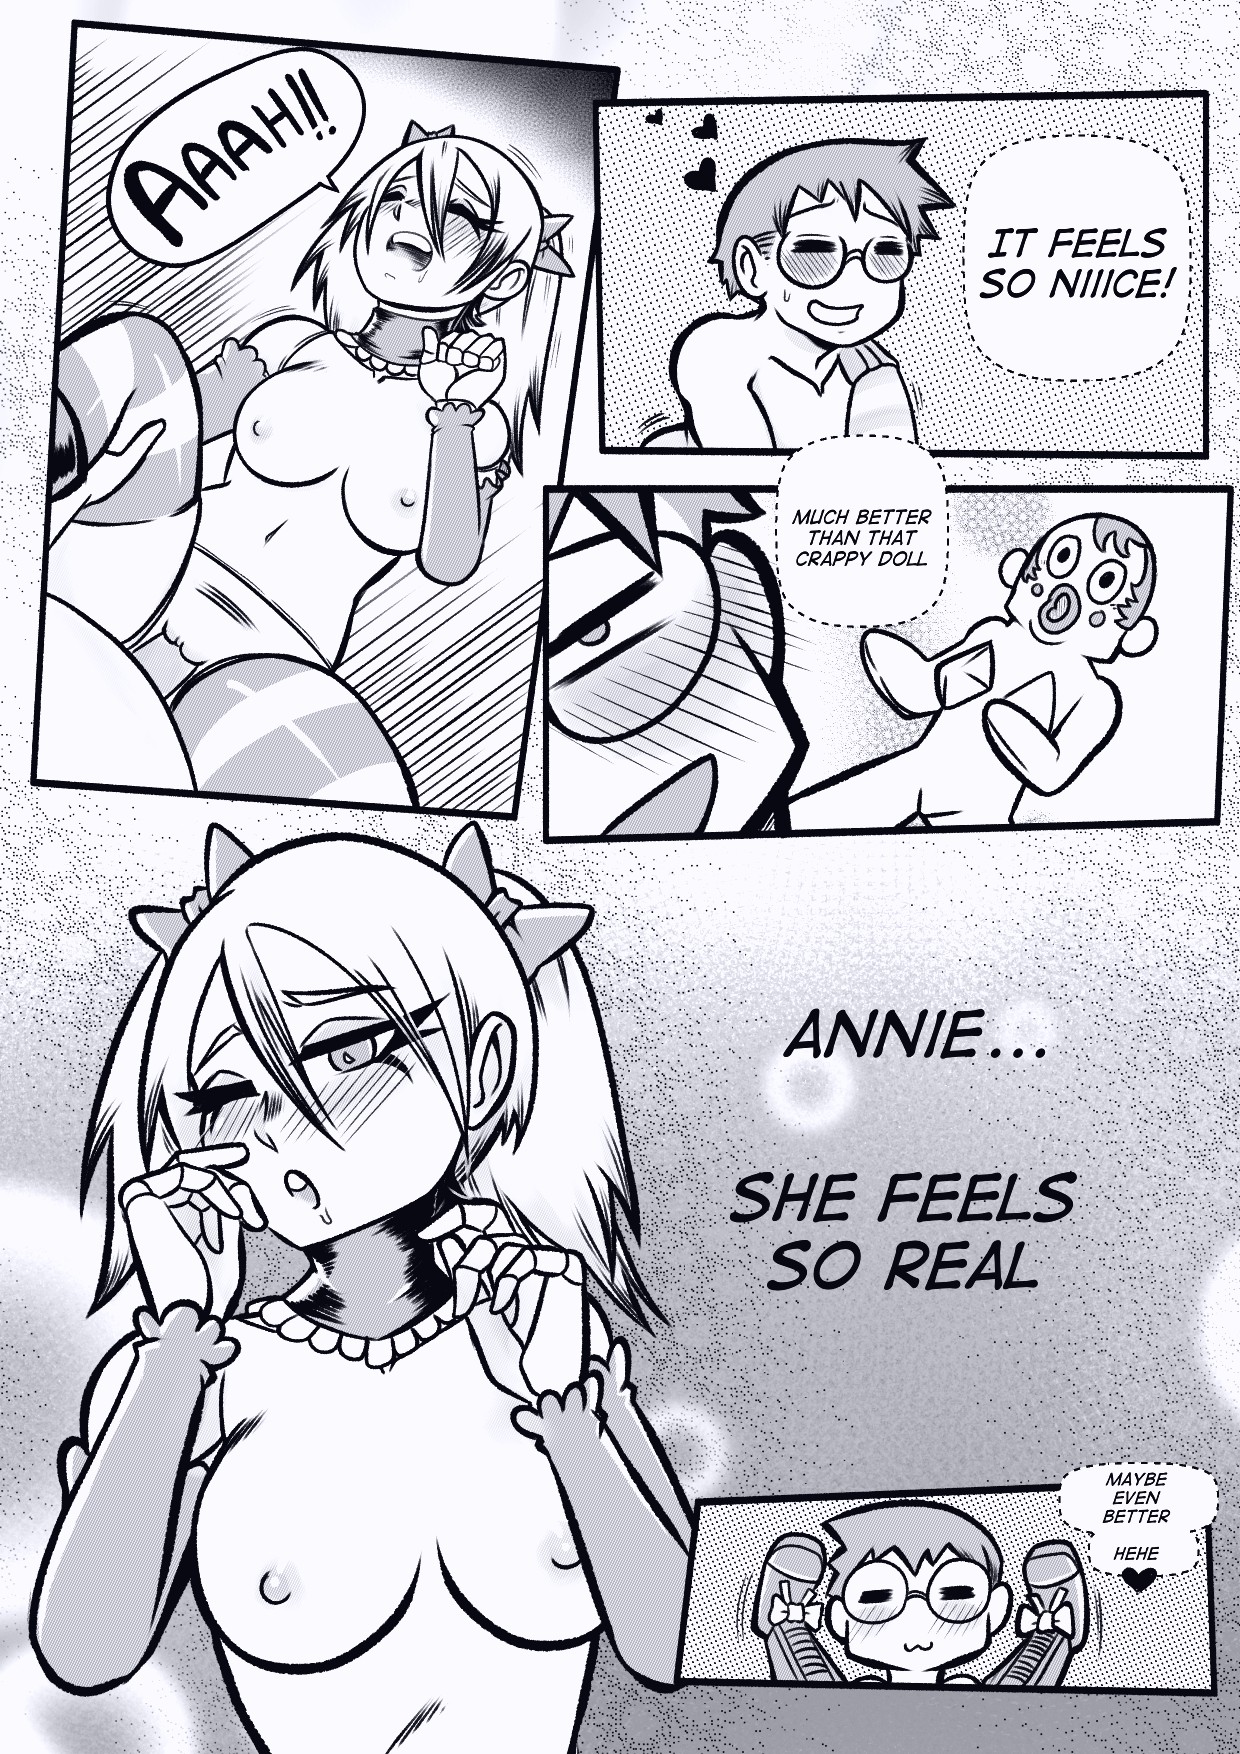 Annie page 40